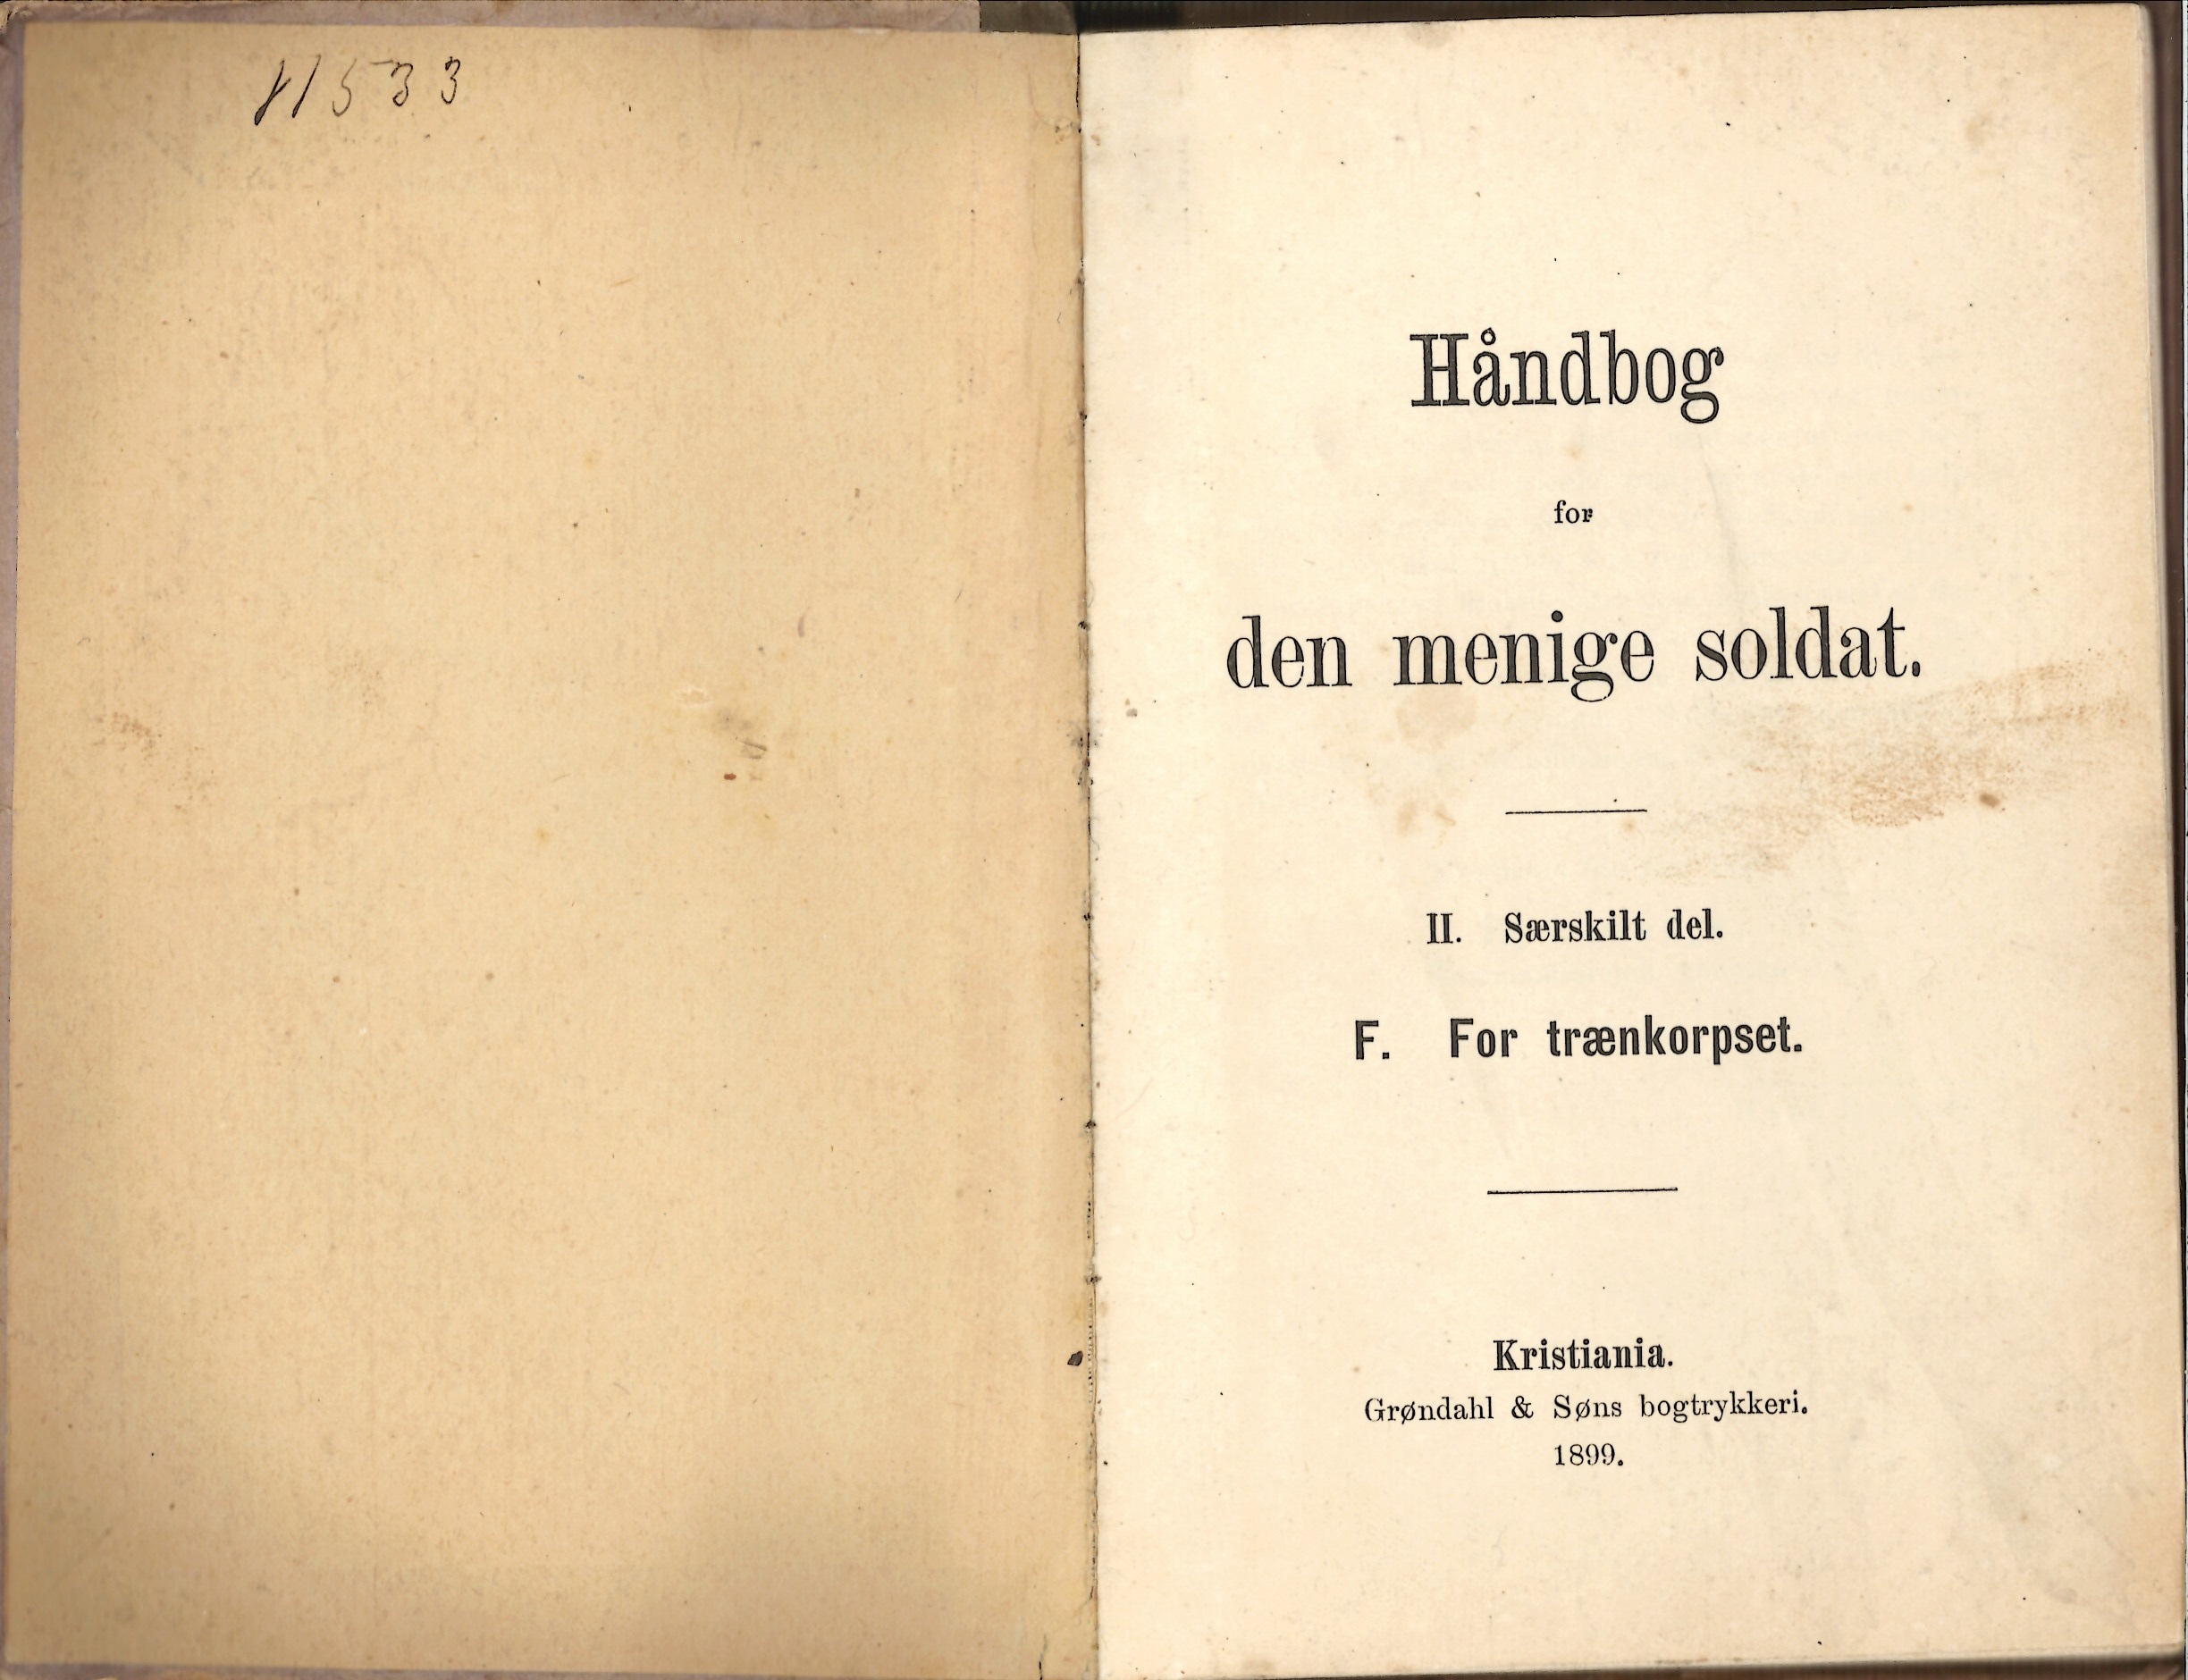 ./doc/reglement/Tren1899/Haandbok-Menig-Soldat-Trenkorps-1899-1.jpg